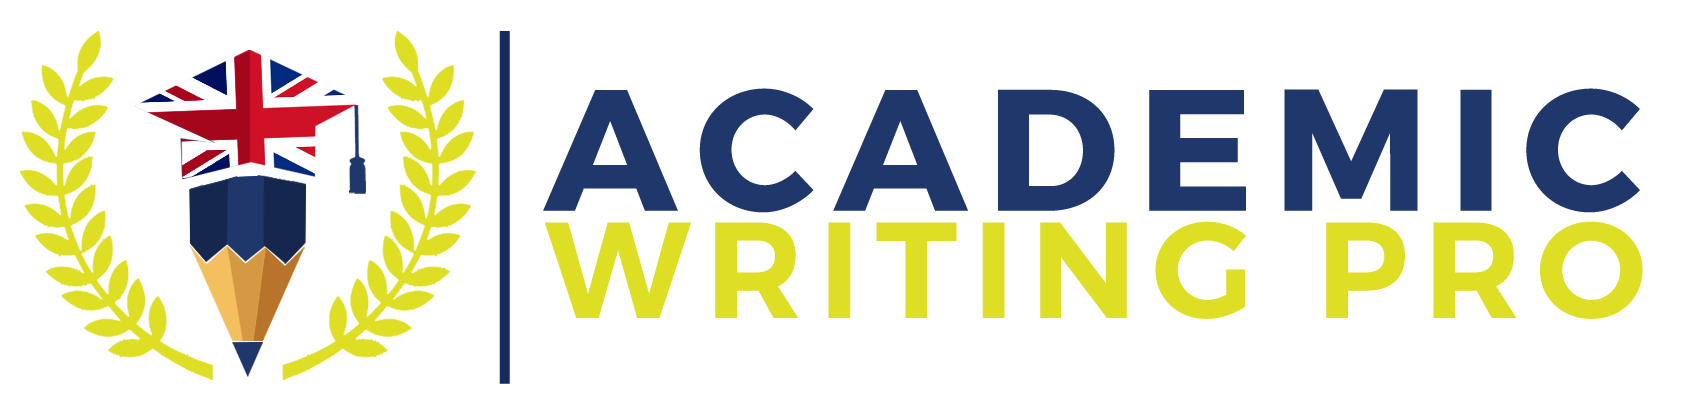 Academic Writing Pro - Logo